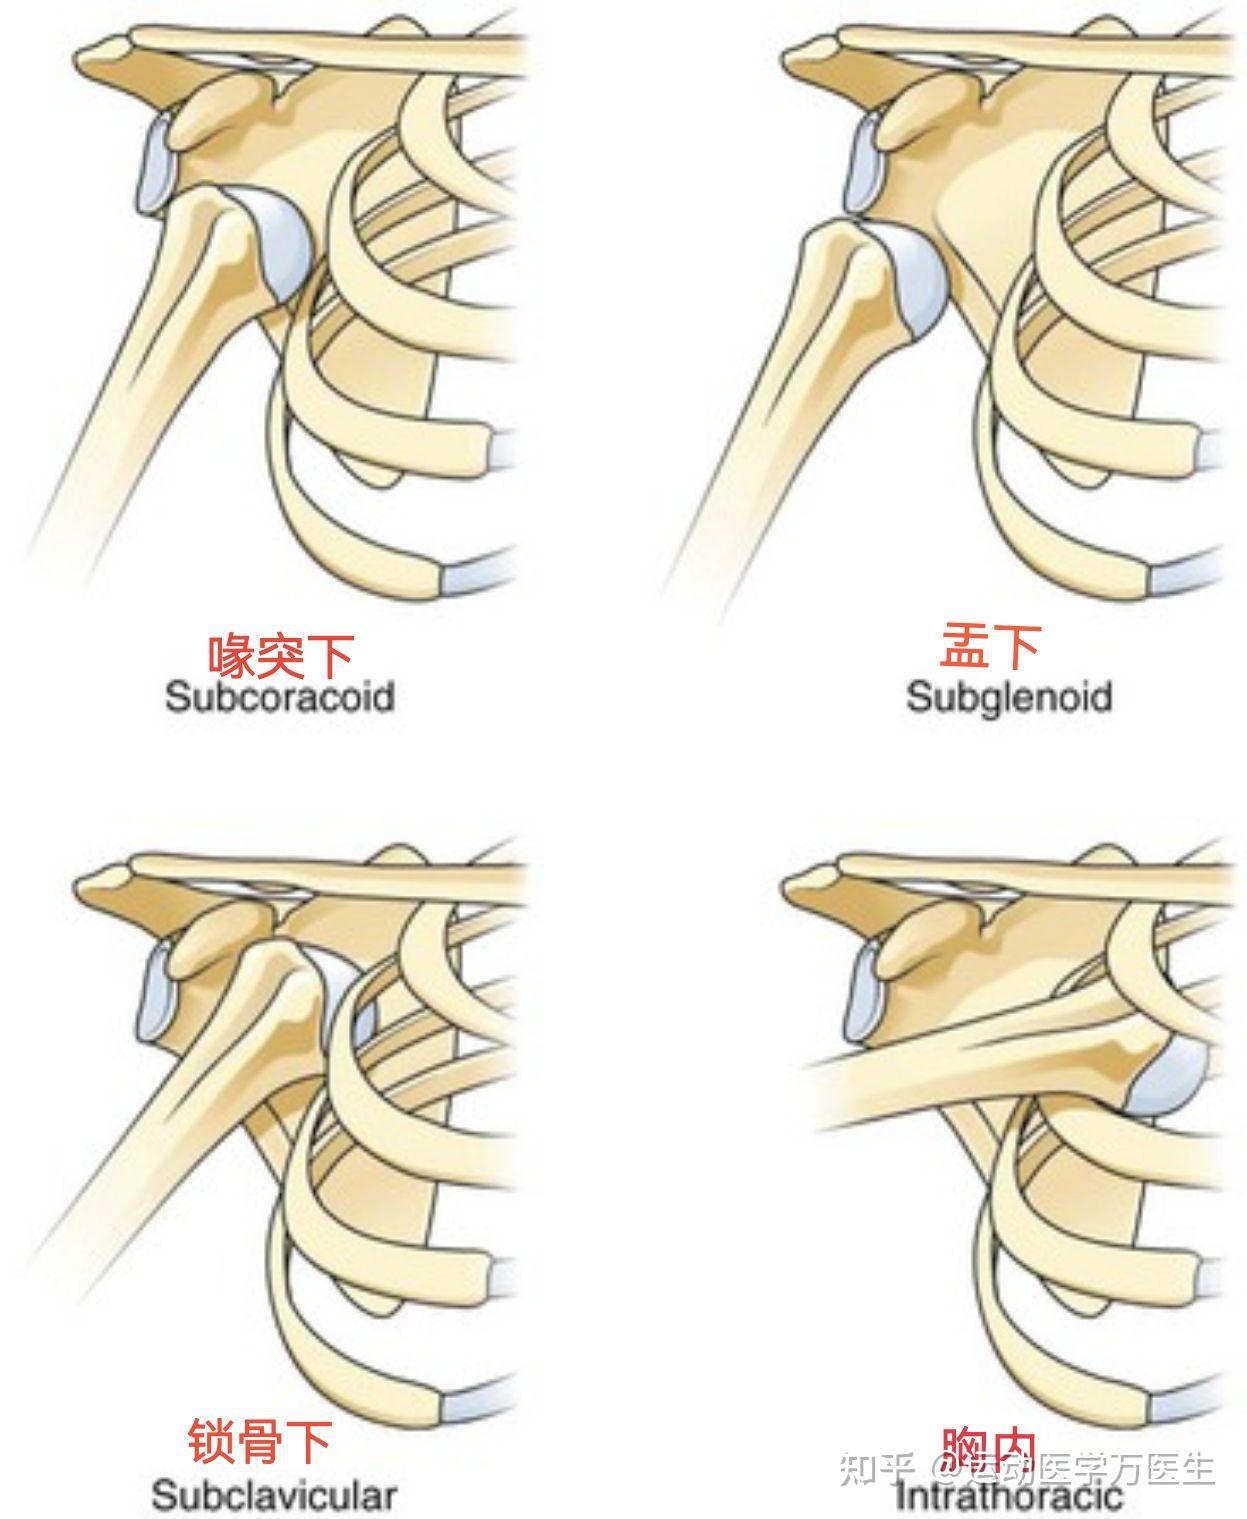 8年制外科学肩关节脱位分型图示是不是错了